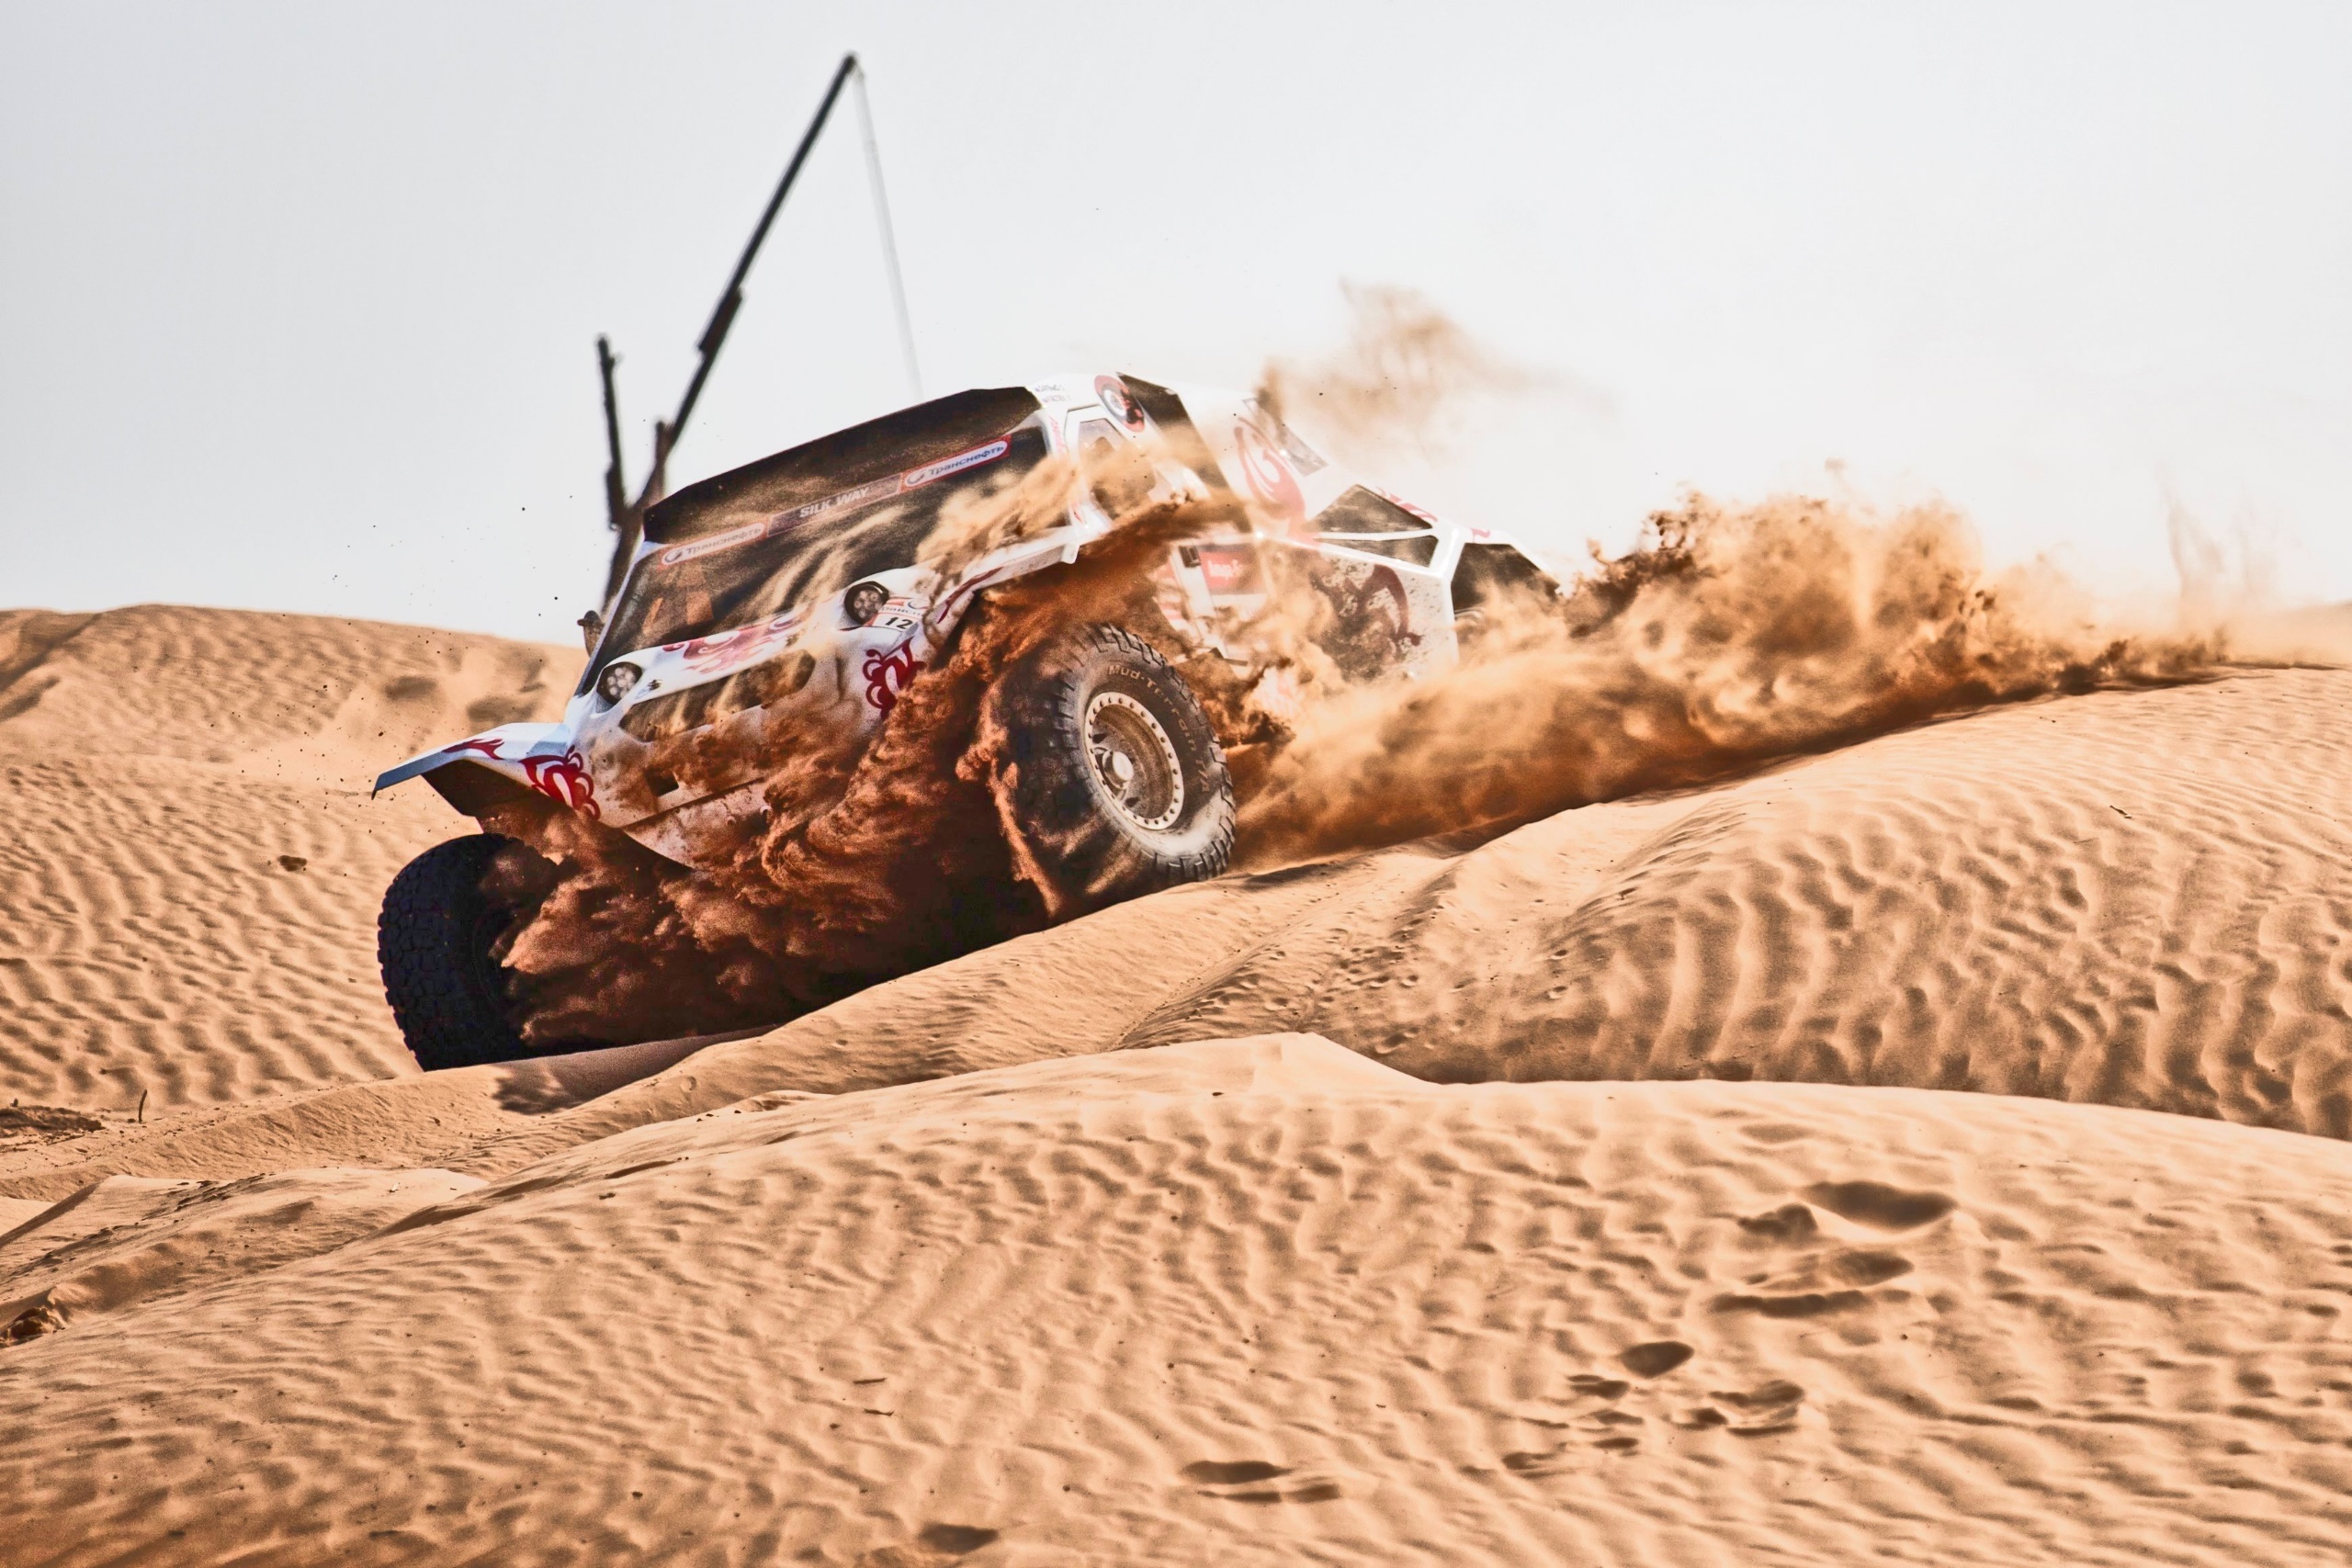 Dakar Rally: Desert racing, Cross-country rallying, An off-road endurance event. 2560x1710 HD Wallpaper.